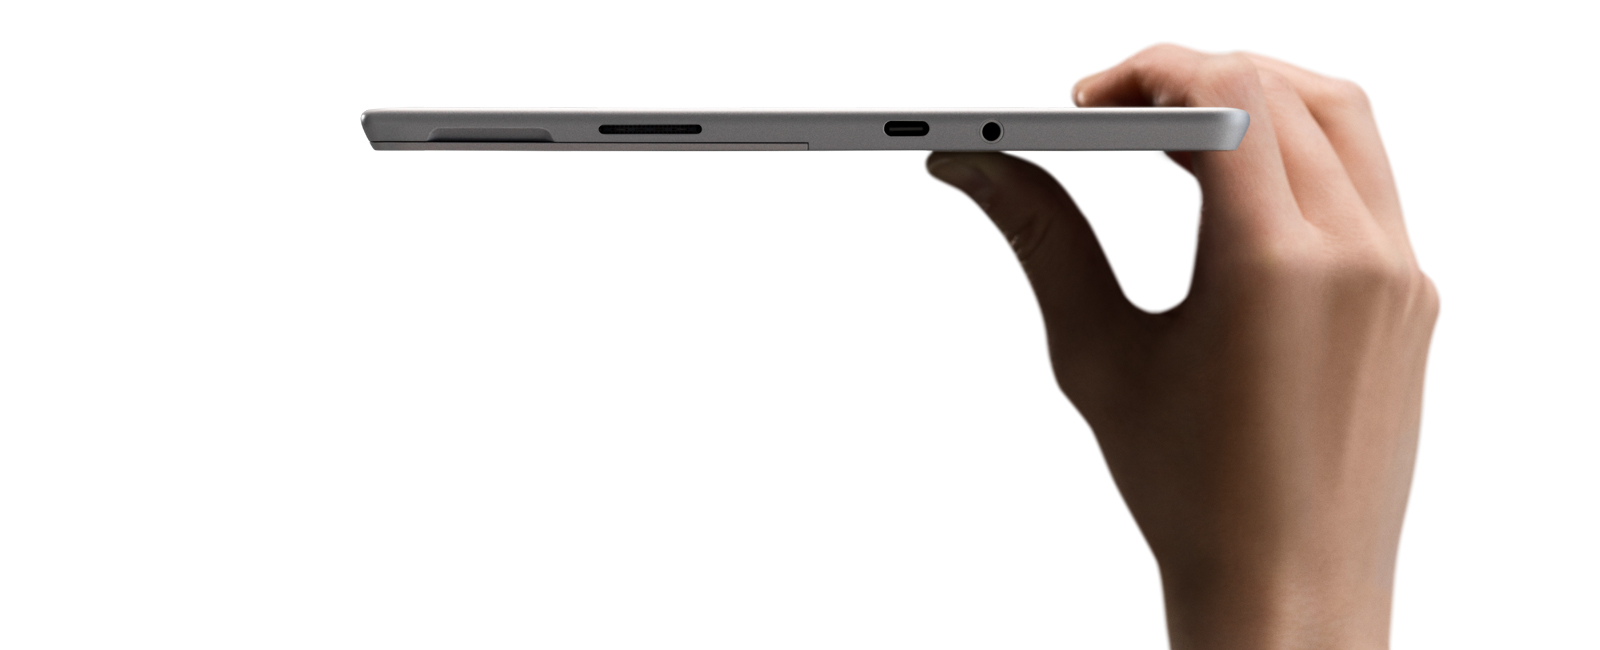 15179円 有名ブランド マイクロソフト Surface Go MHN-00014 office付き